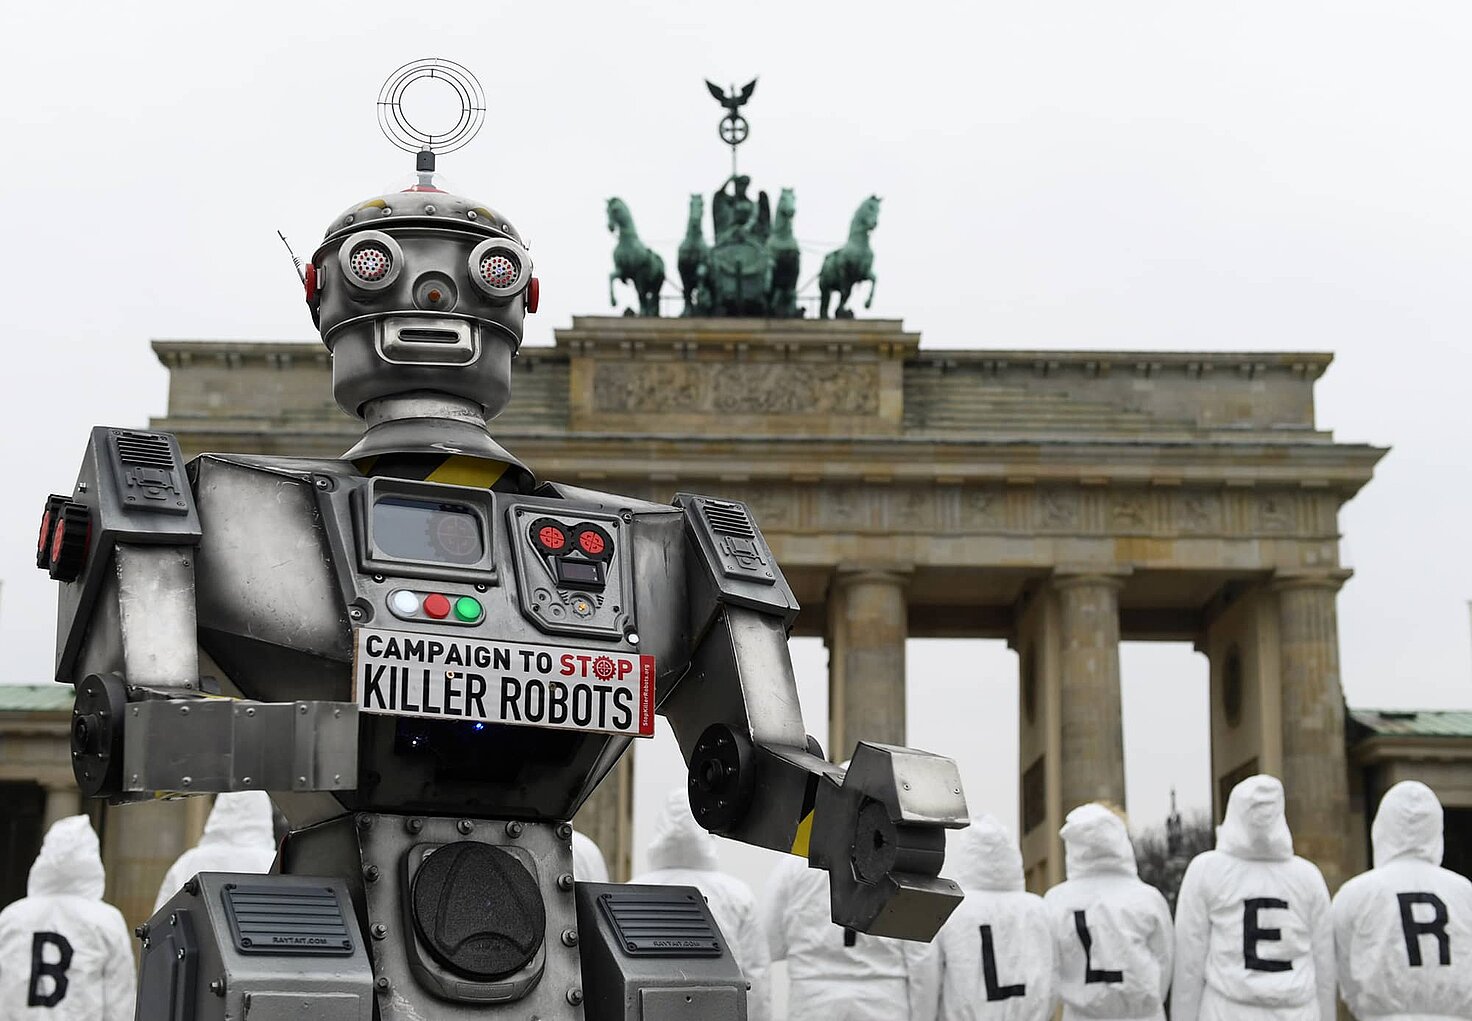 protesta frente a la Puerta de Brandenburgo contra los robots asesinos